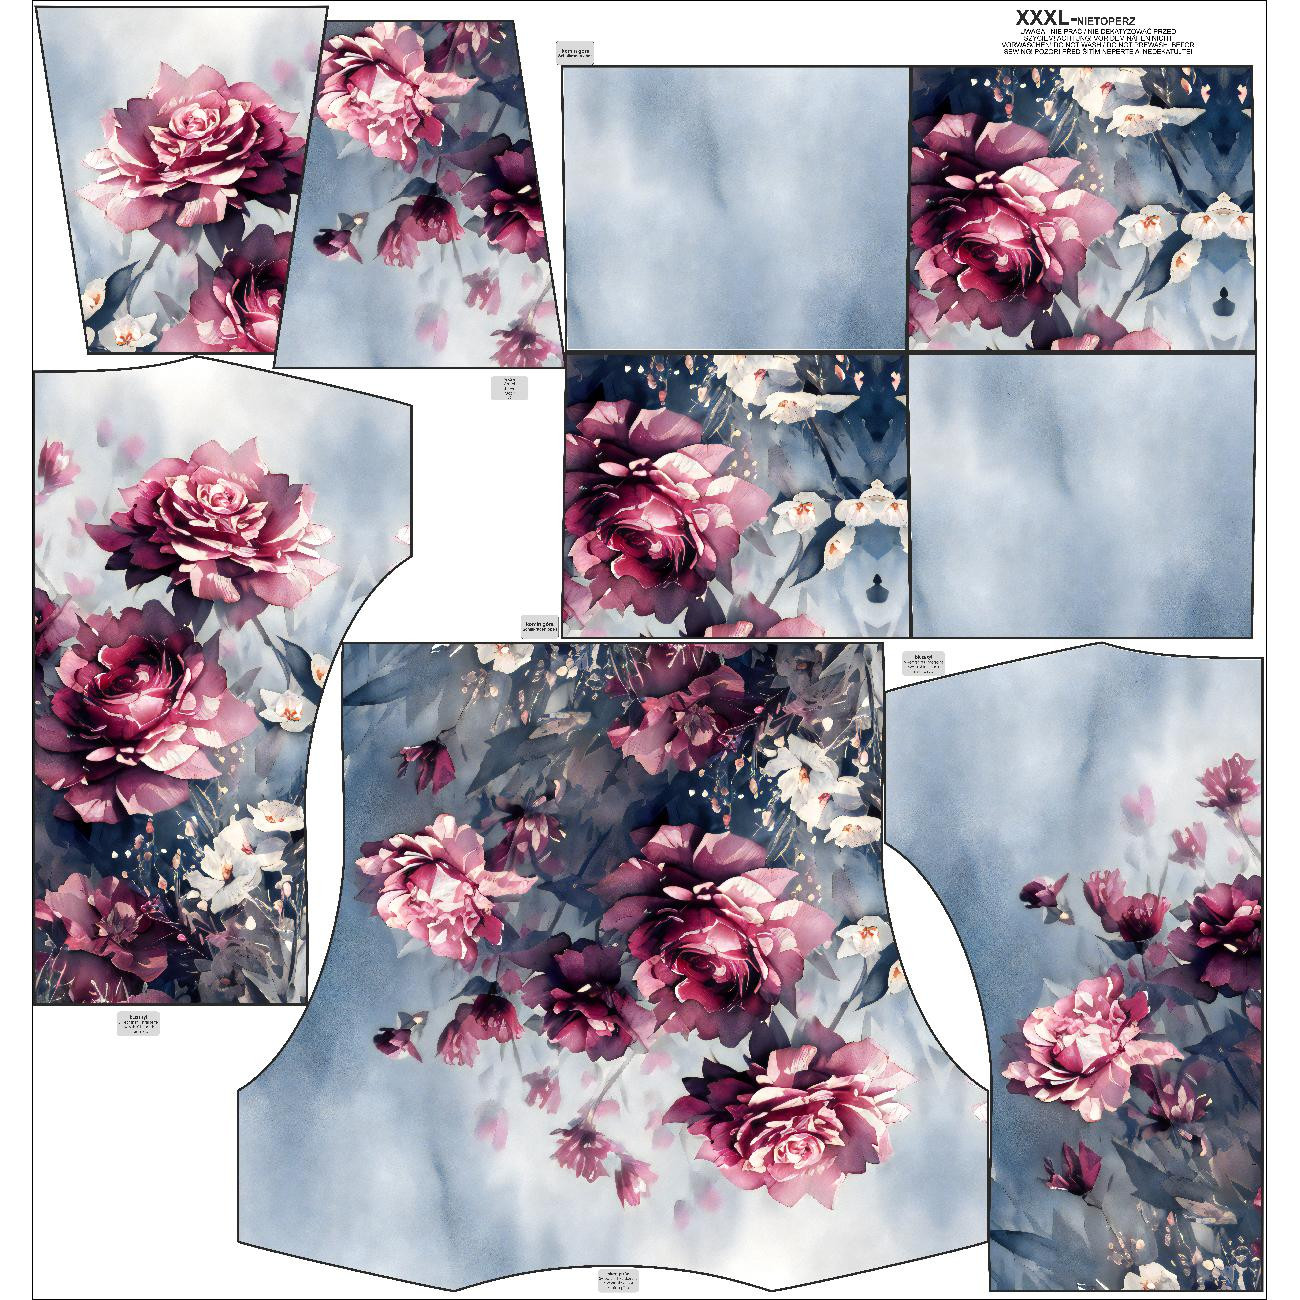 SNOOD SWEATSHIRT (FURIA) - VINTAGE FLOWERS pat. 4  - sewing set